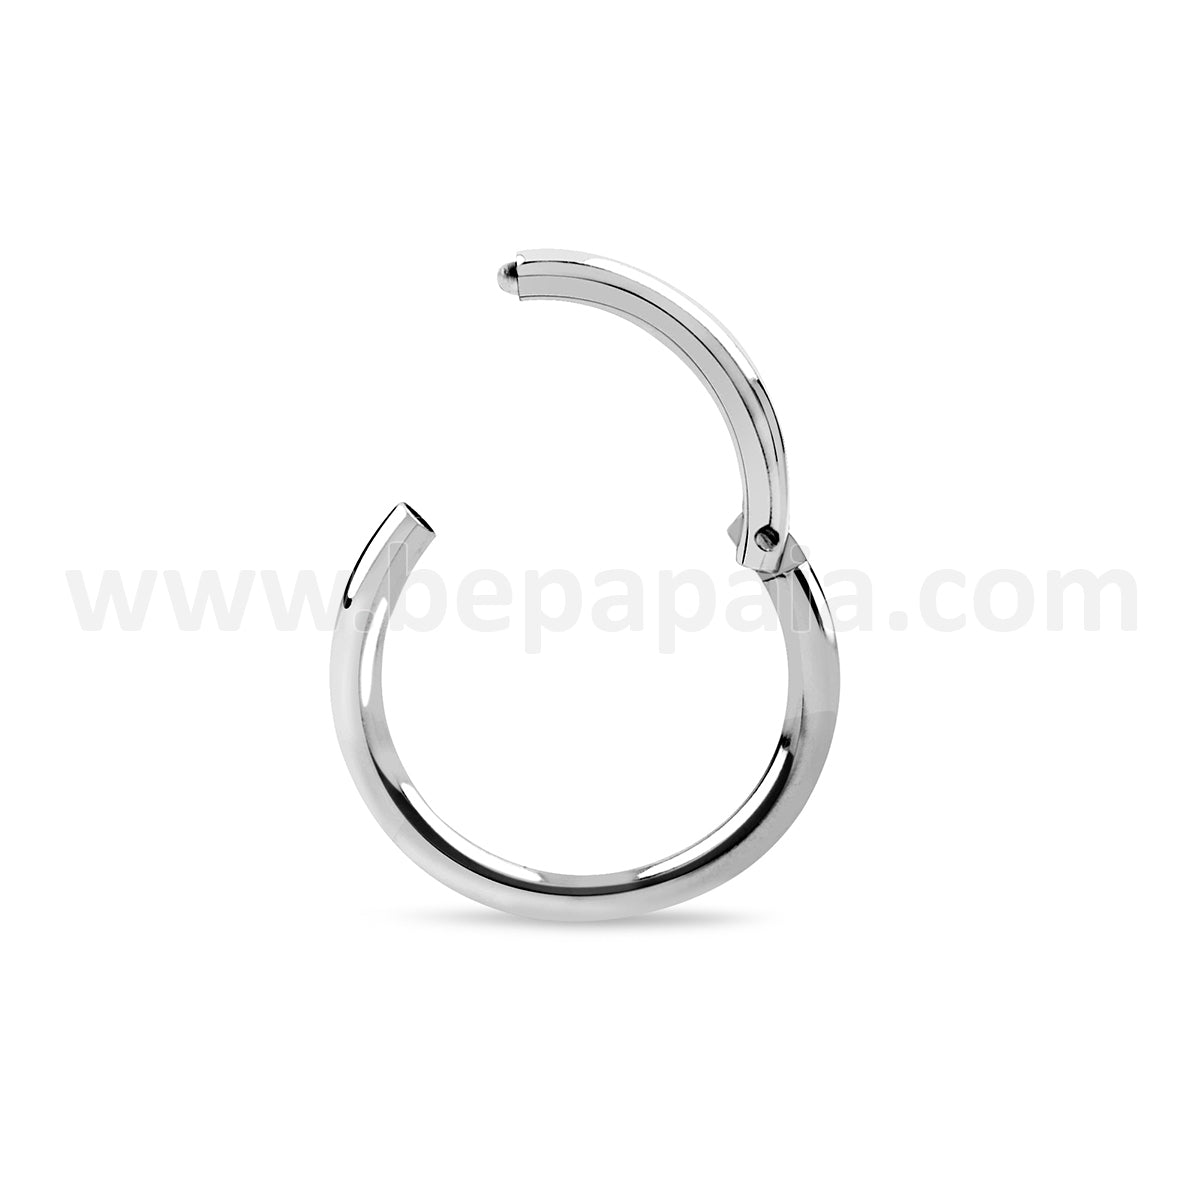 Titanium hinged segment ring 1.2x8&10mm